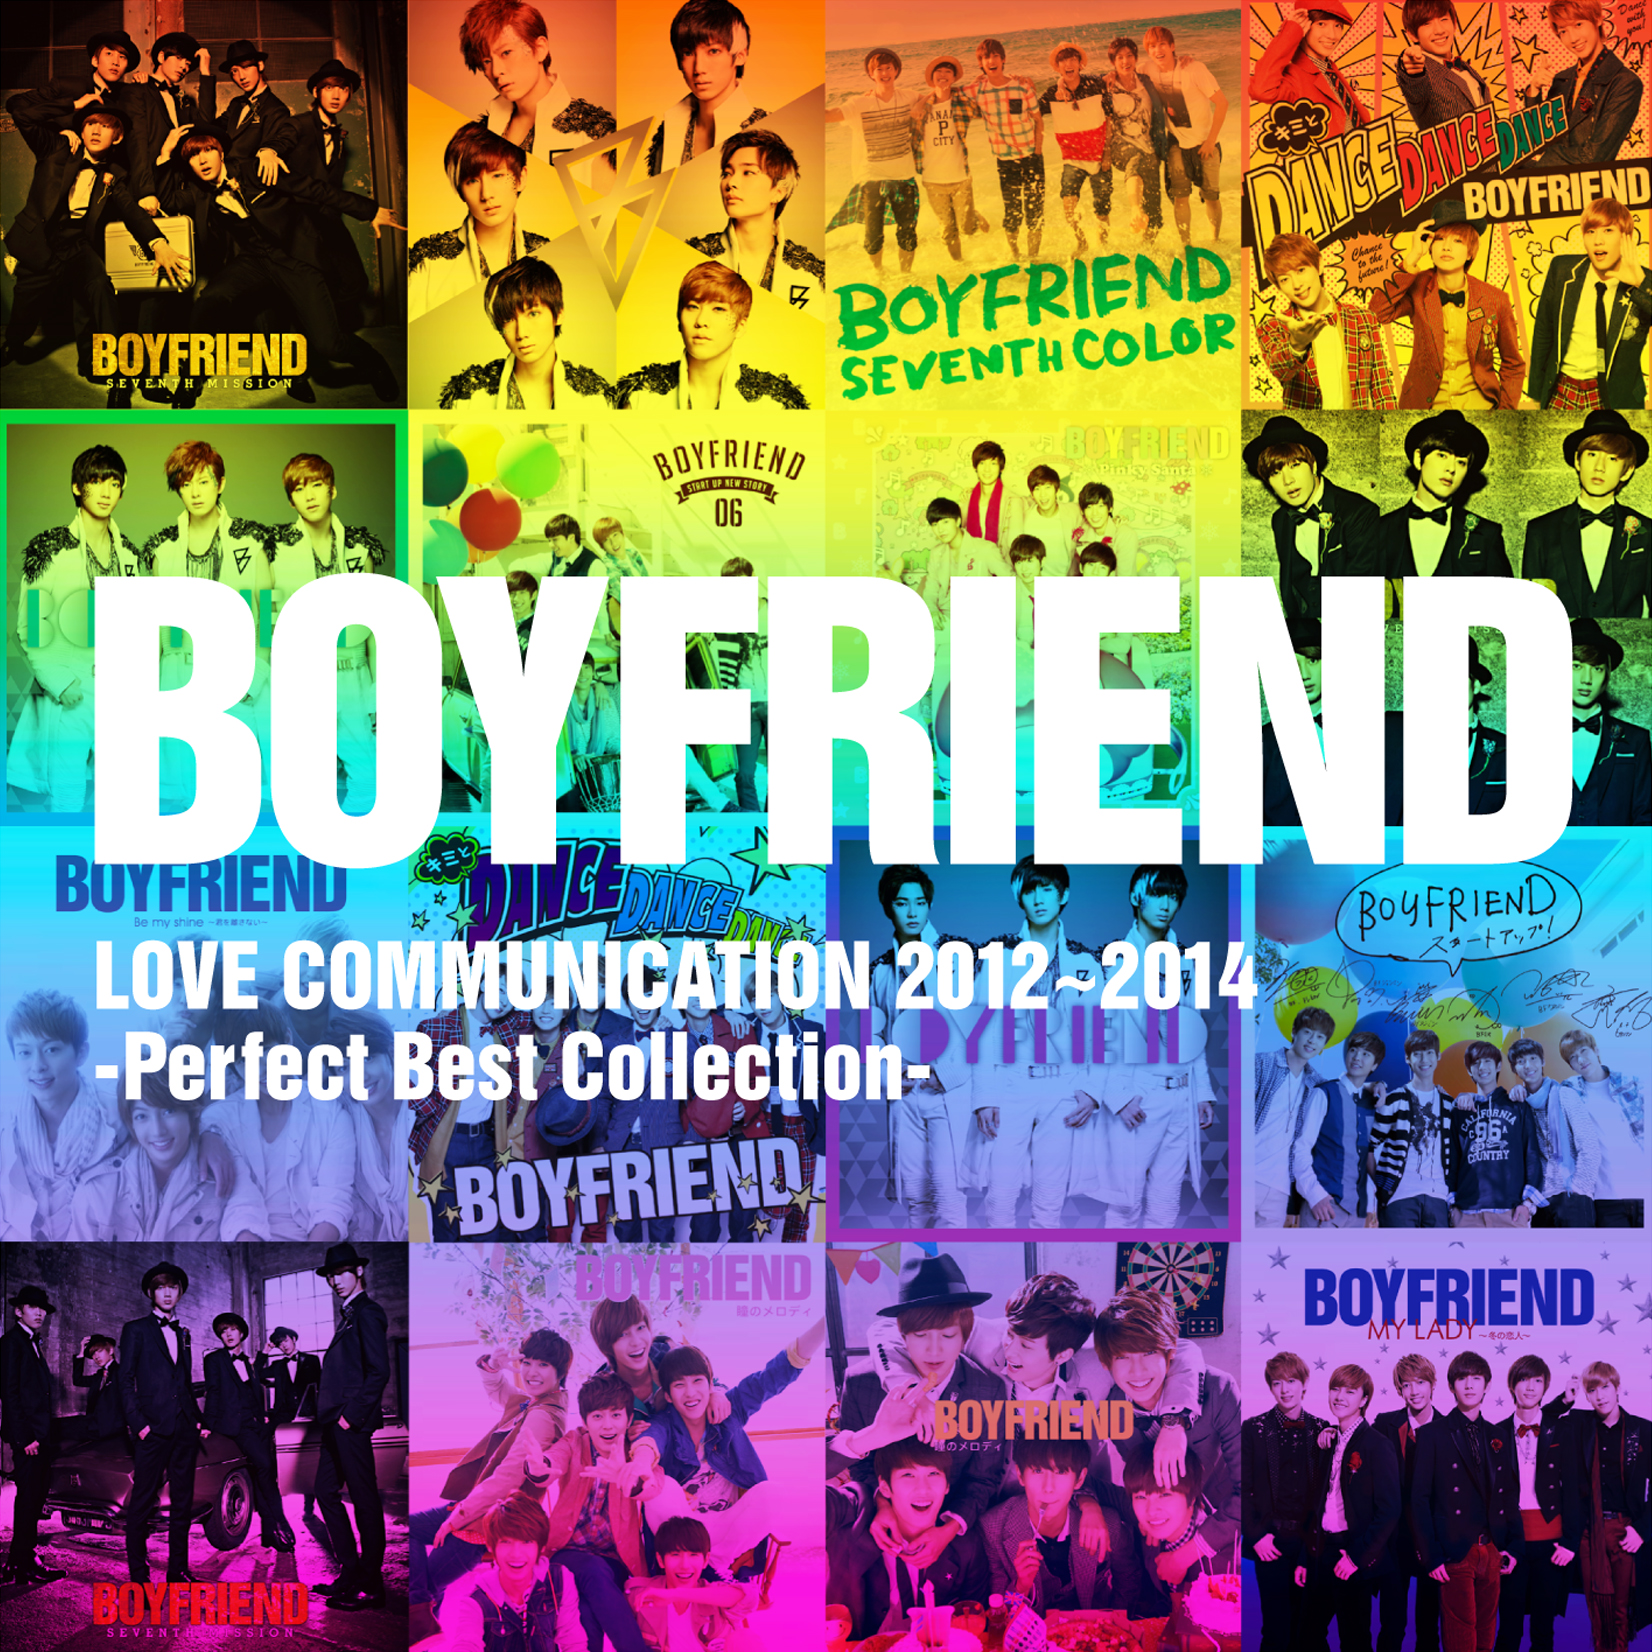 Boyfriend boyfriend album. CD with boyfriend. Best collection 2